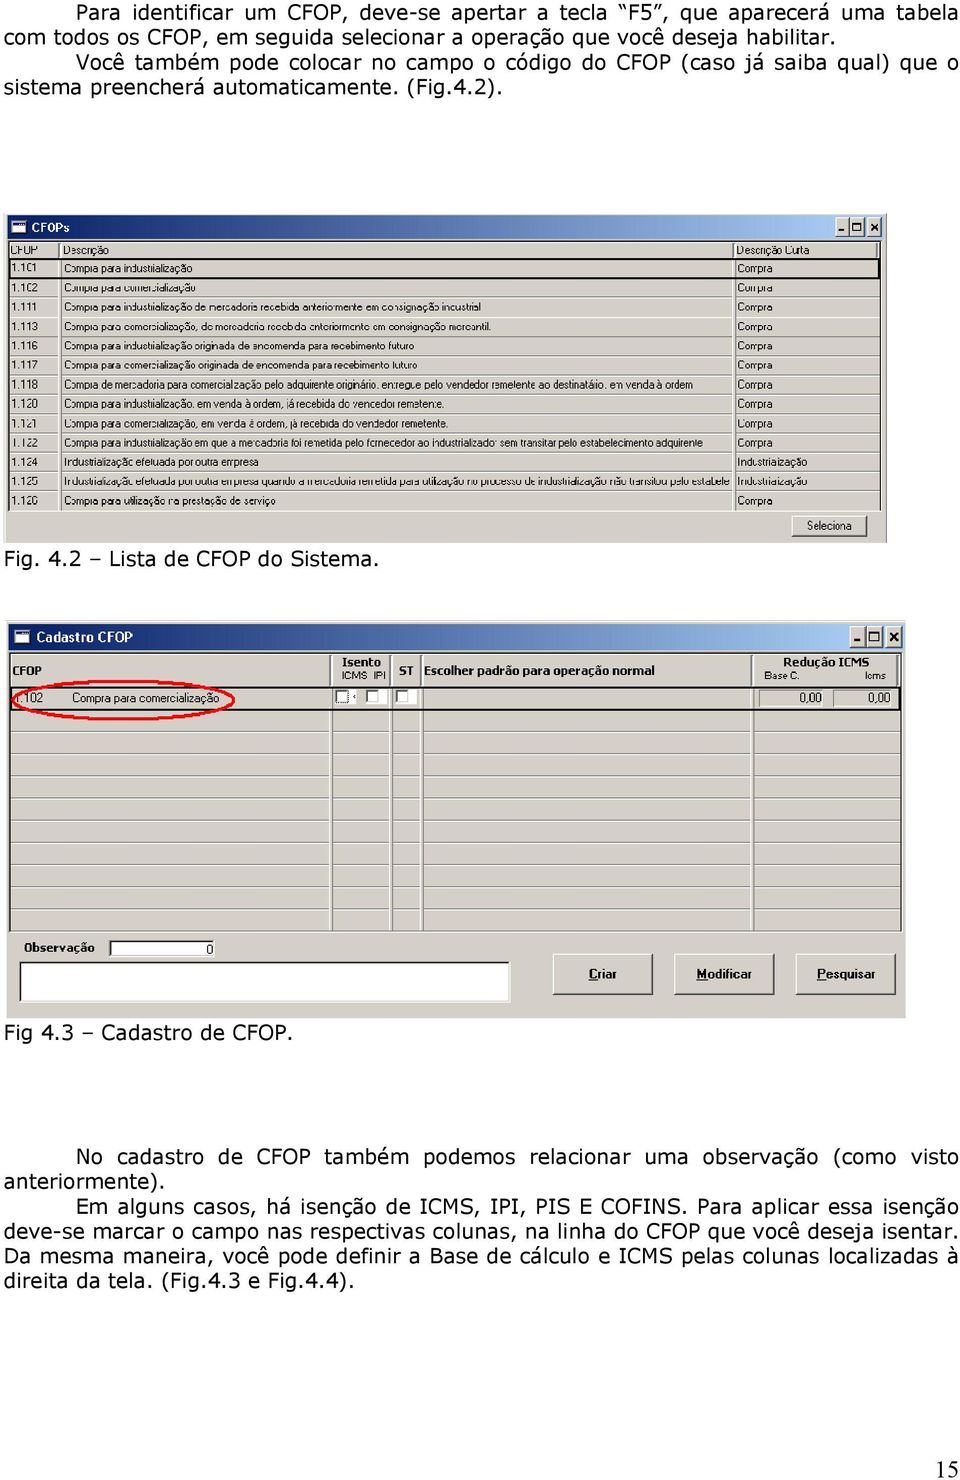 3 Cadastro de CFOP. No cadastro de CFOP também podemos relacionar uma observação (como visto anteriormente). Em alguns casos, há isenção de ICMS, IPI, PIS E COFINS.